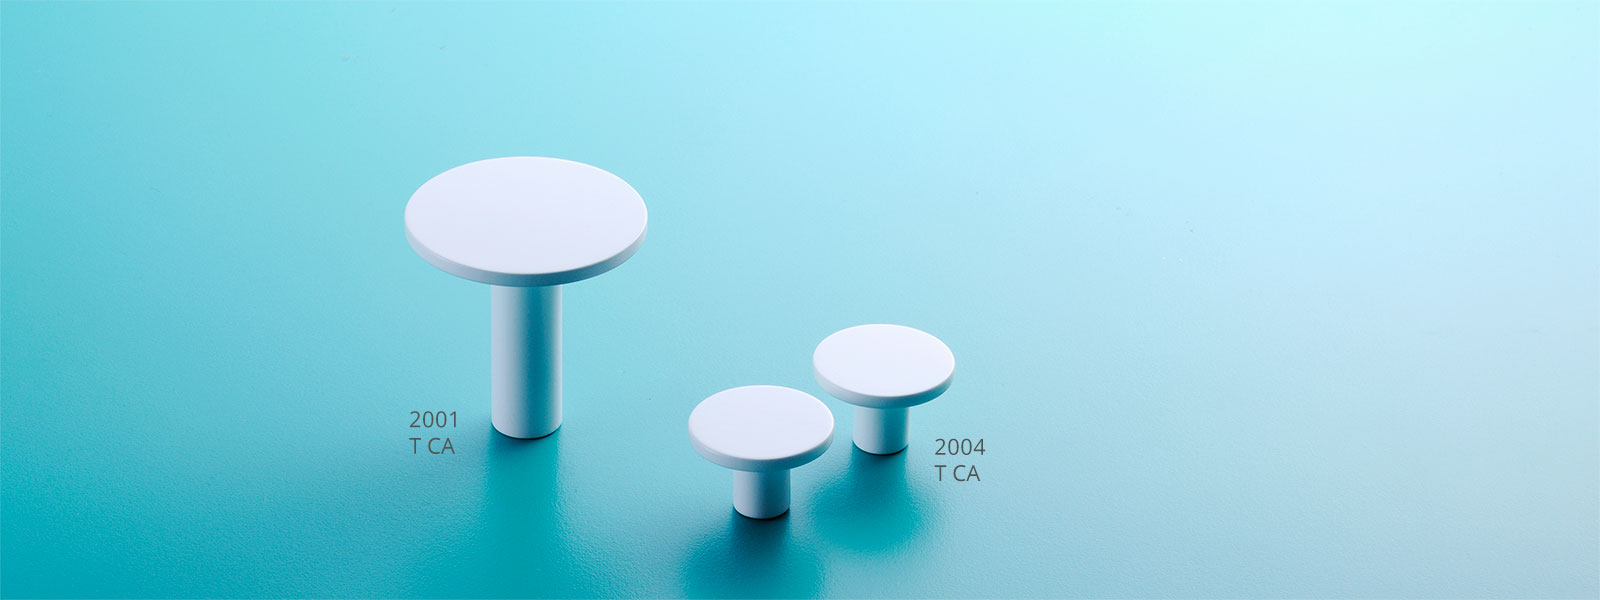 家具用取手 2004 image1